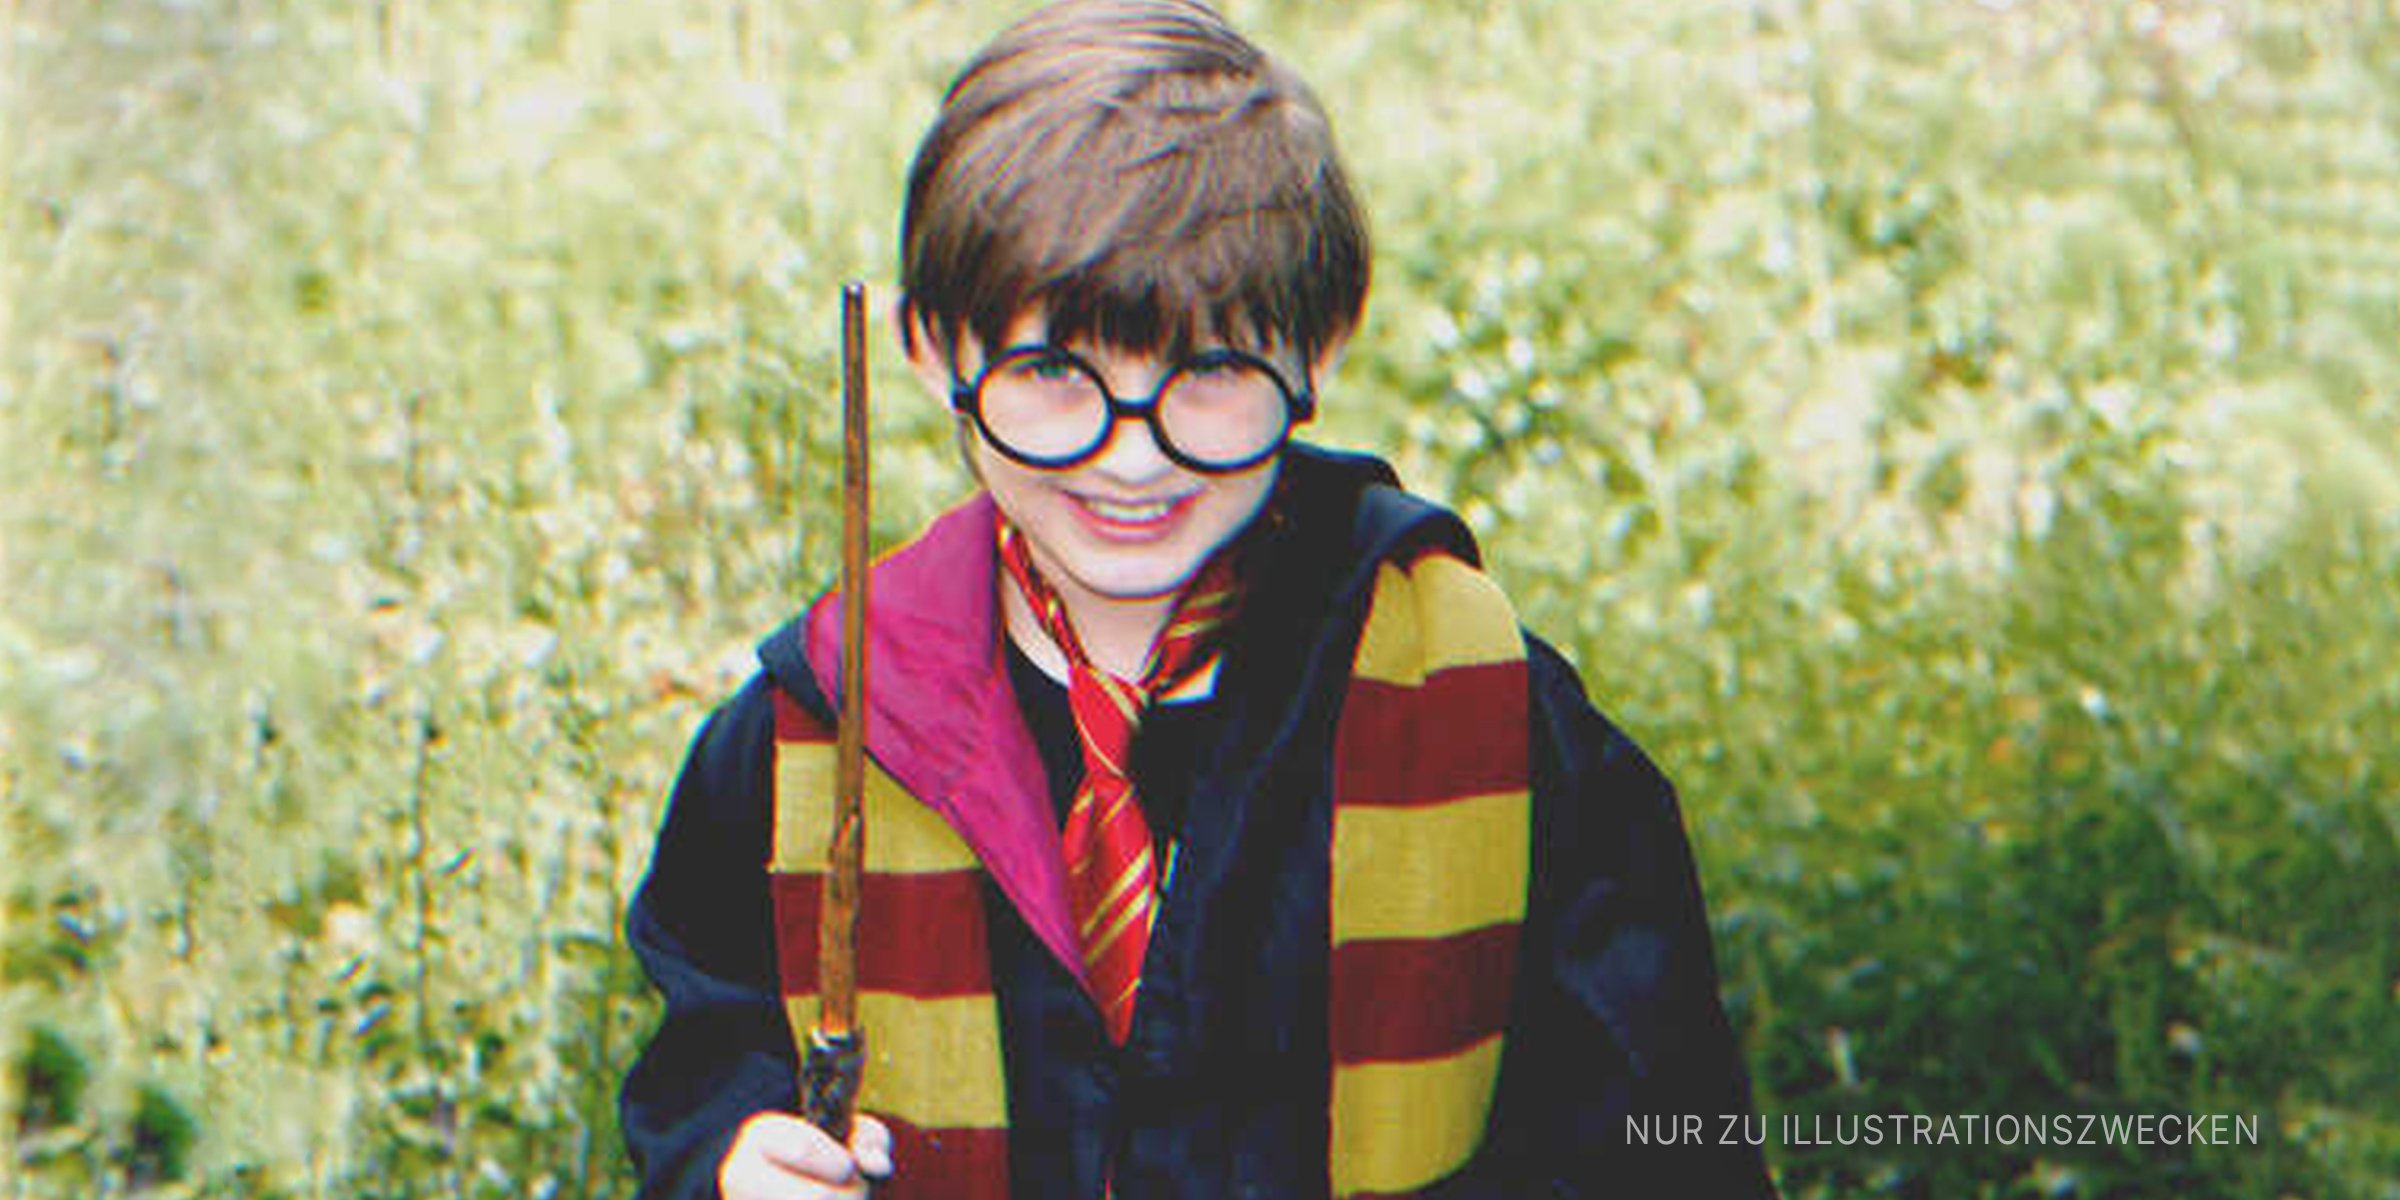 Kleiner Junge als Harry Potter verkleidet. | Quelle: Shutterstock